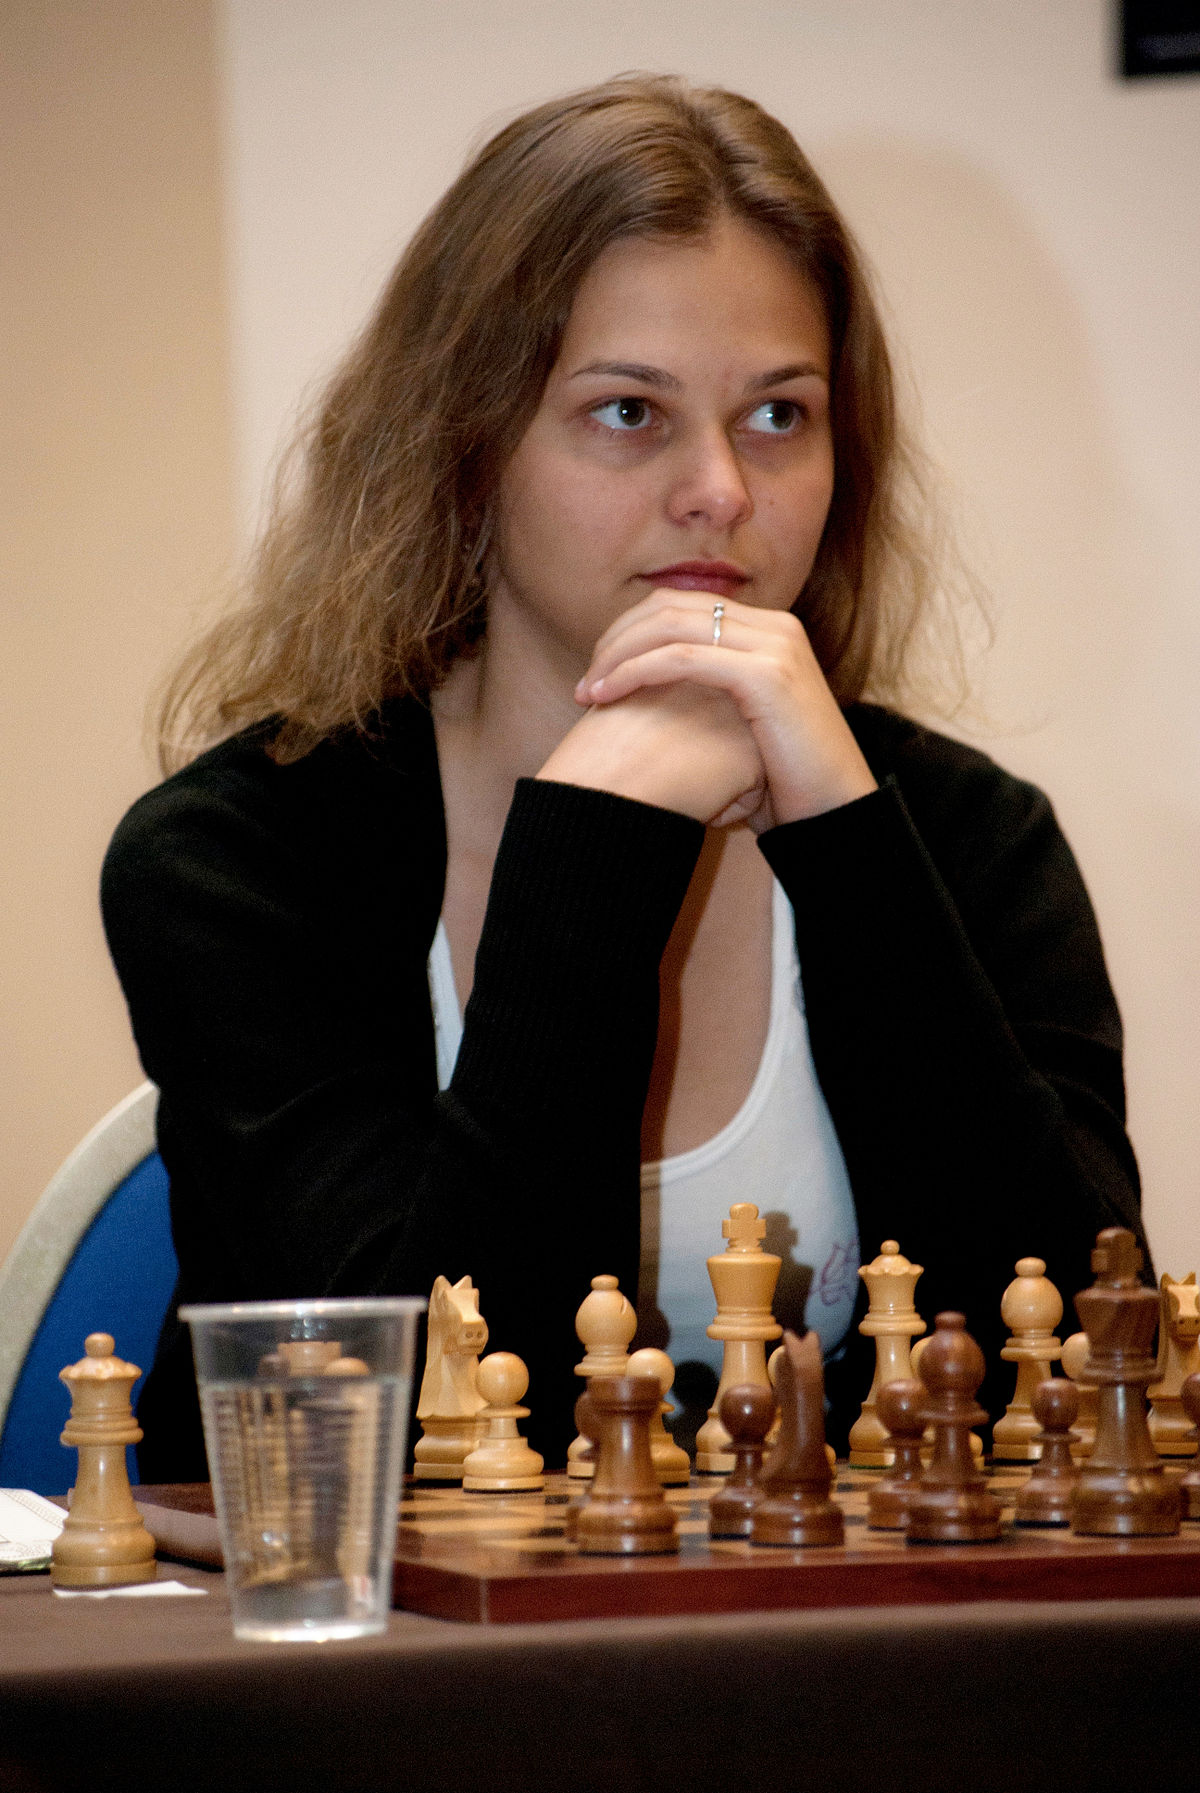 The chess games of Anna Muzychuk